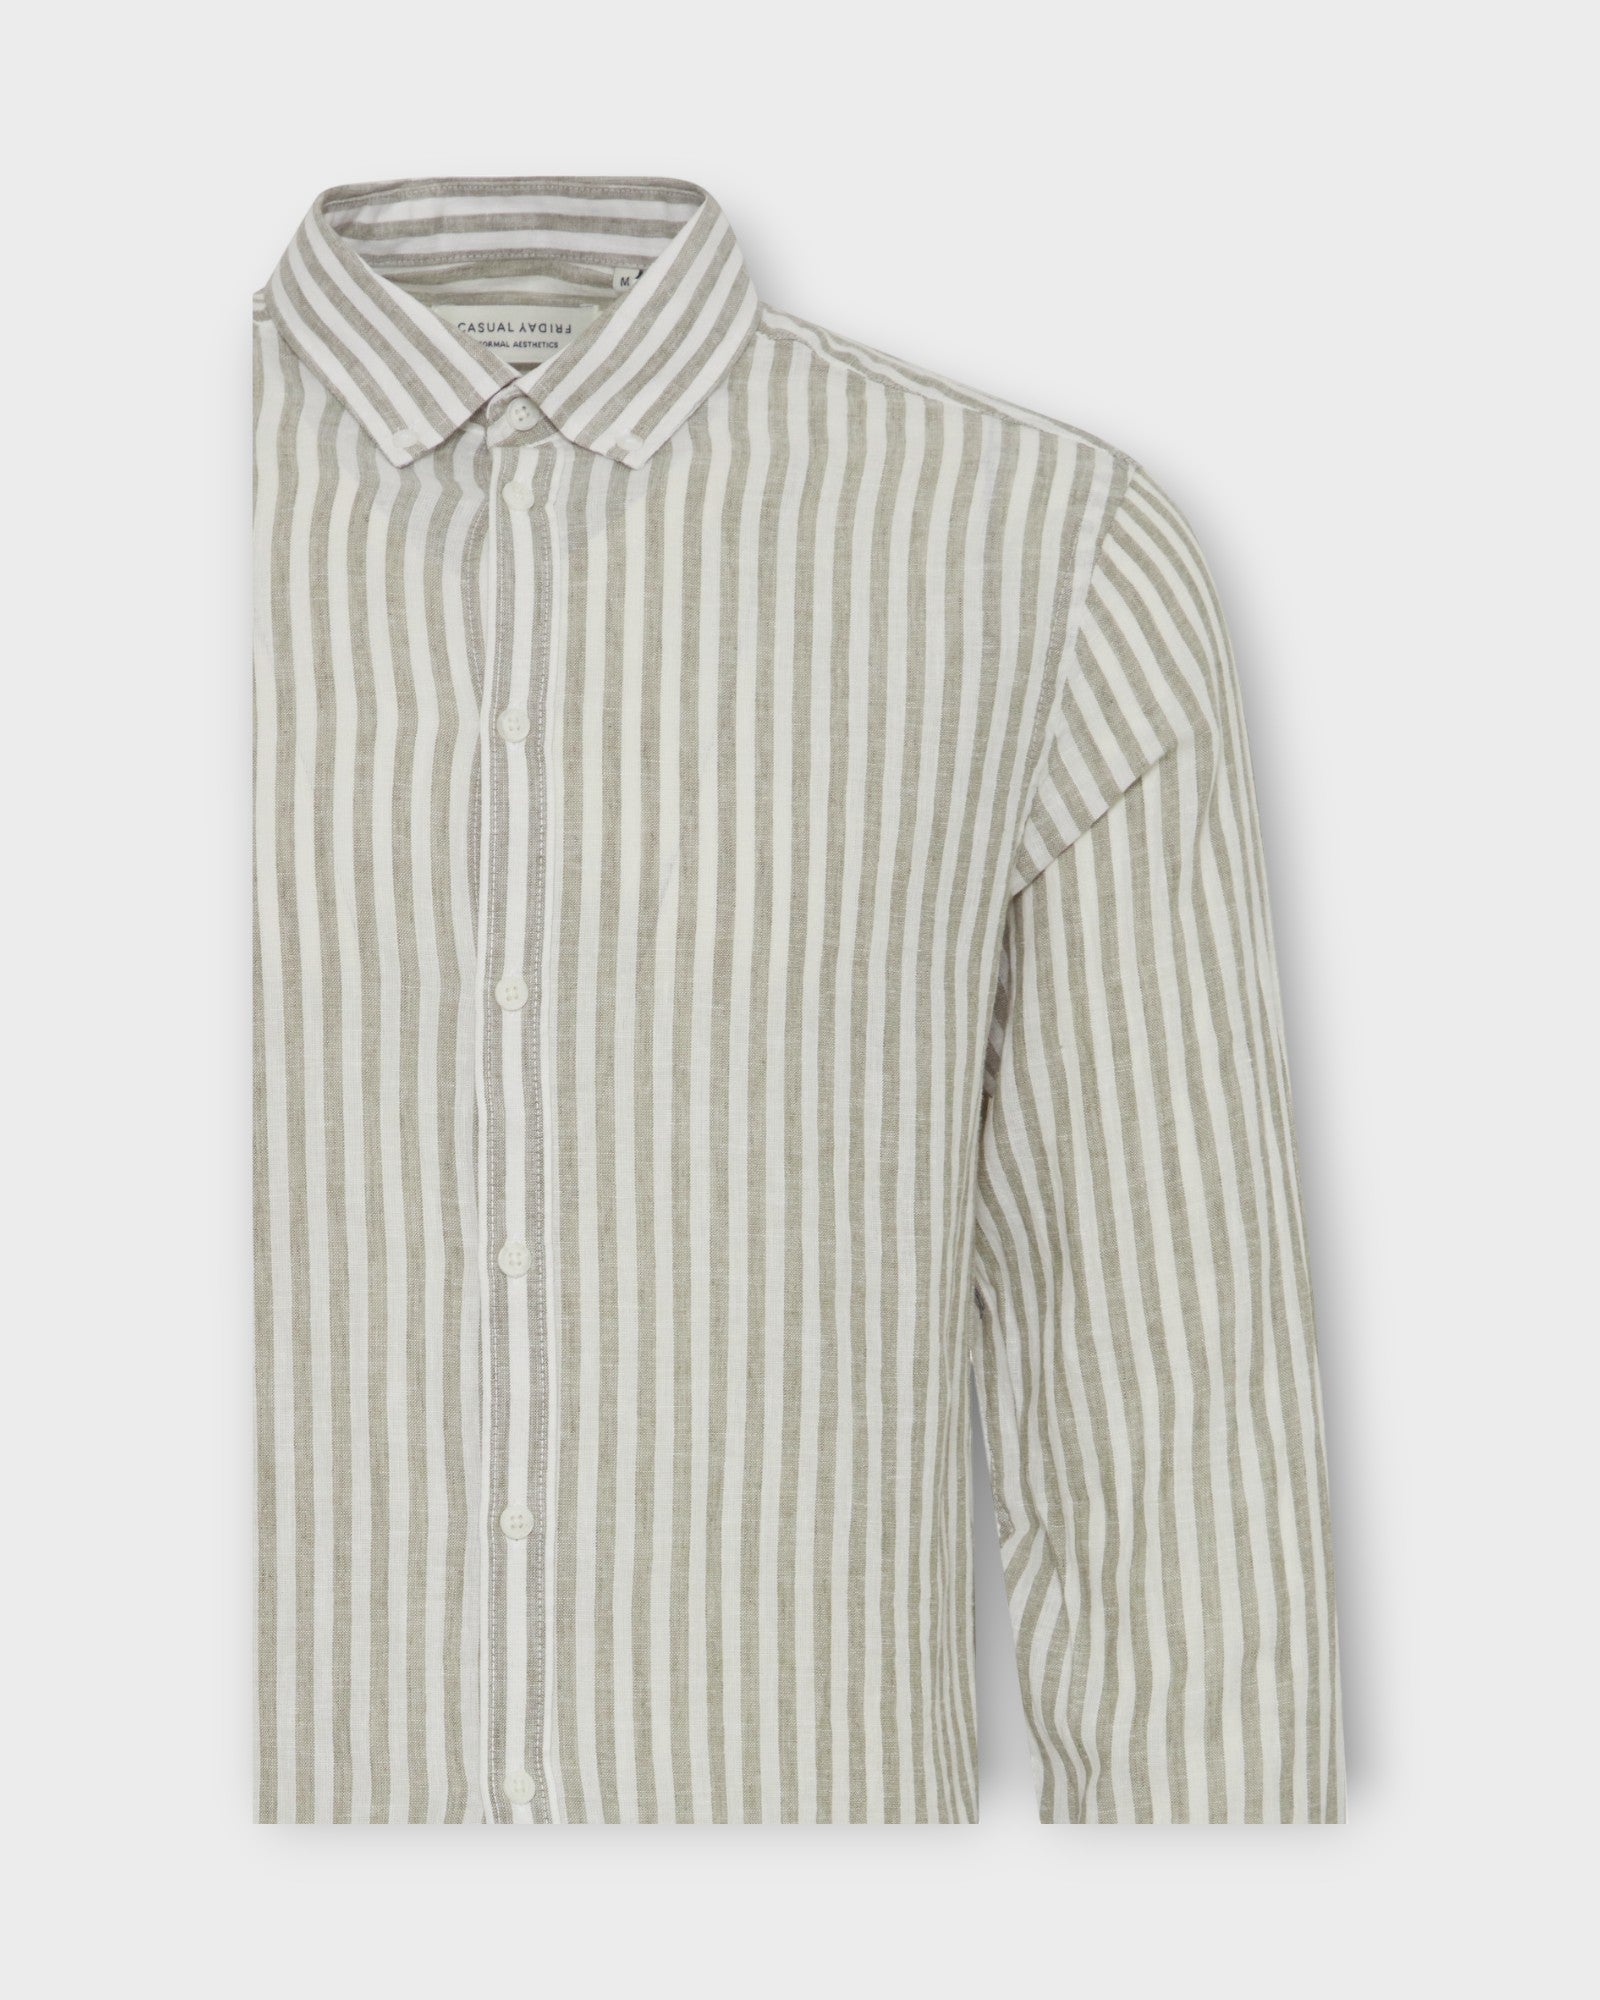 Anton Striped Linen Shirt Vetiver fra Casual Friday. Stribet langærmet hørskjorte til mænd. Her set i closeup.